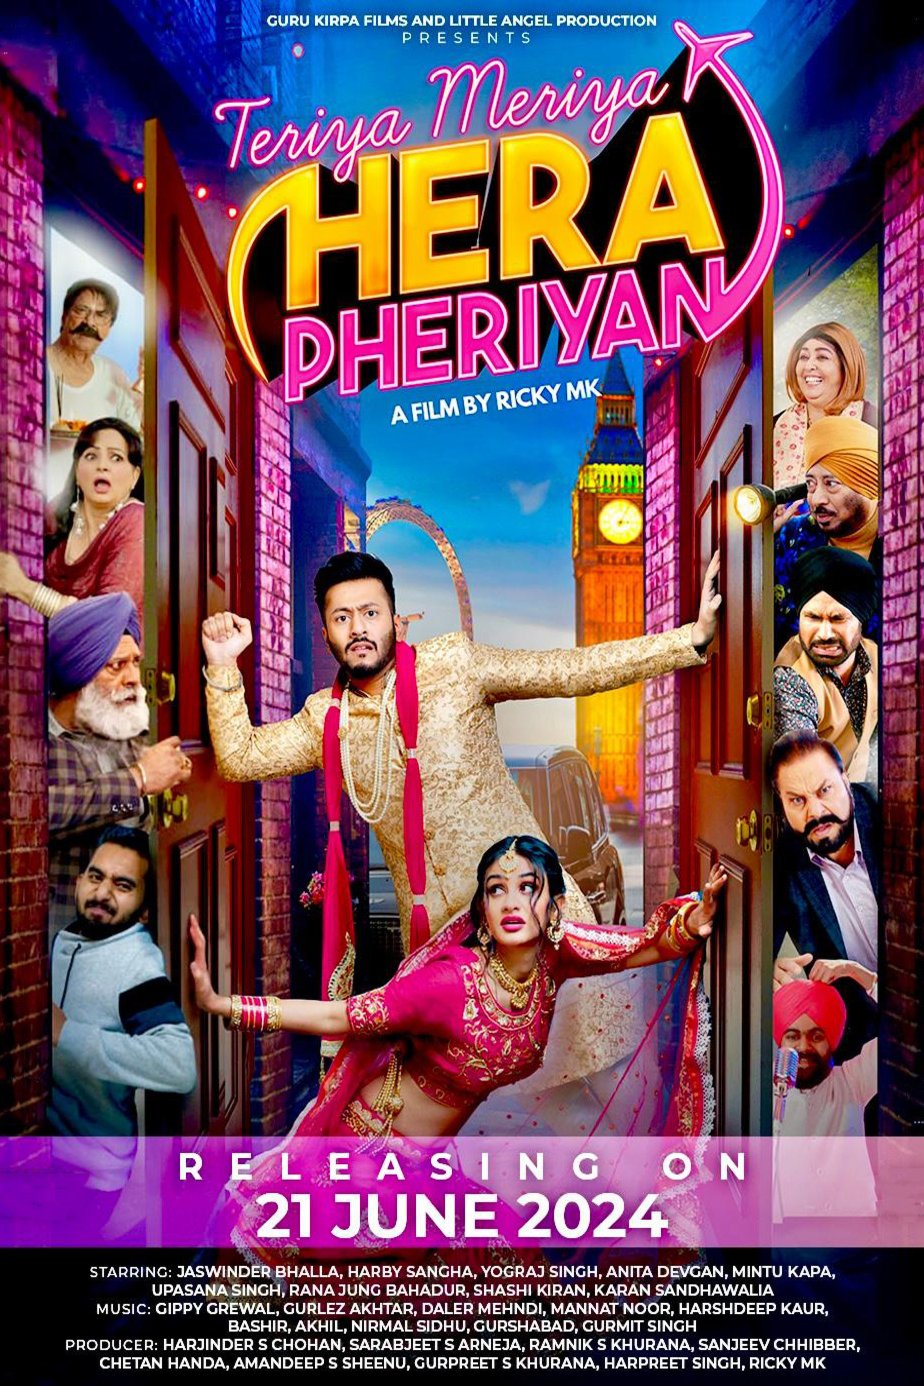 Punjabi poster of the movie Teriyaan Meriyaan Hera Pheriyan